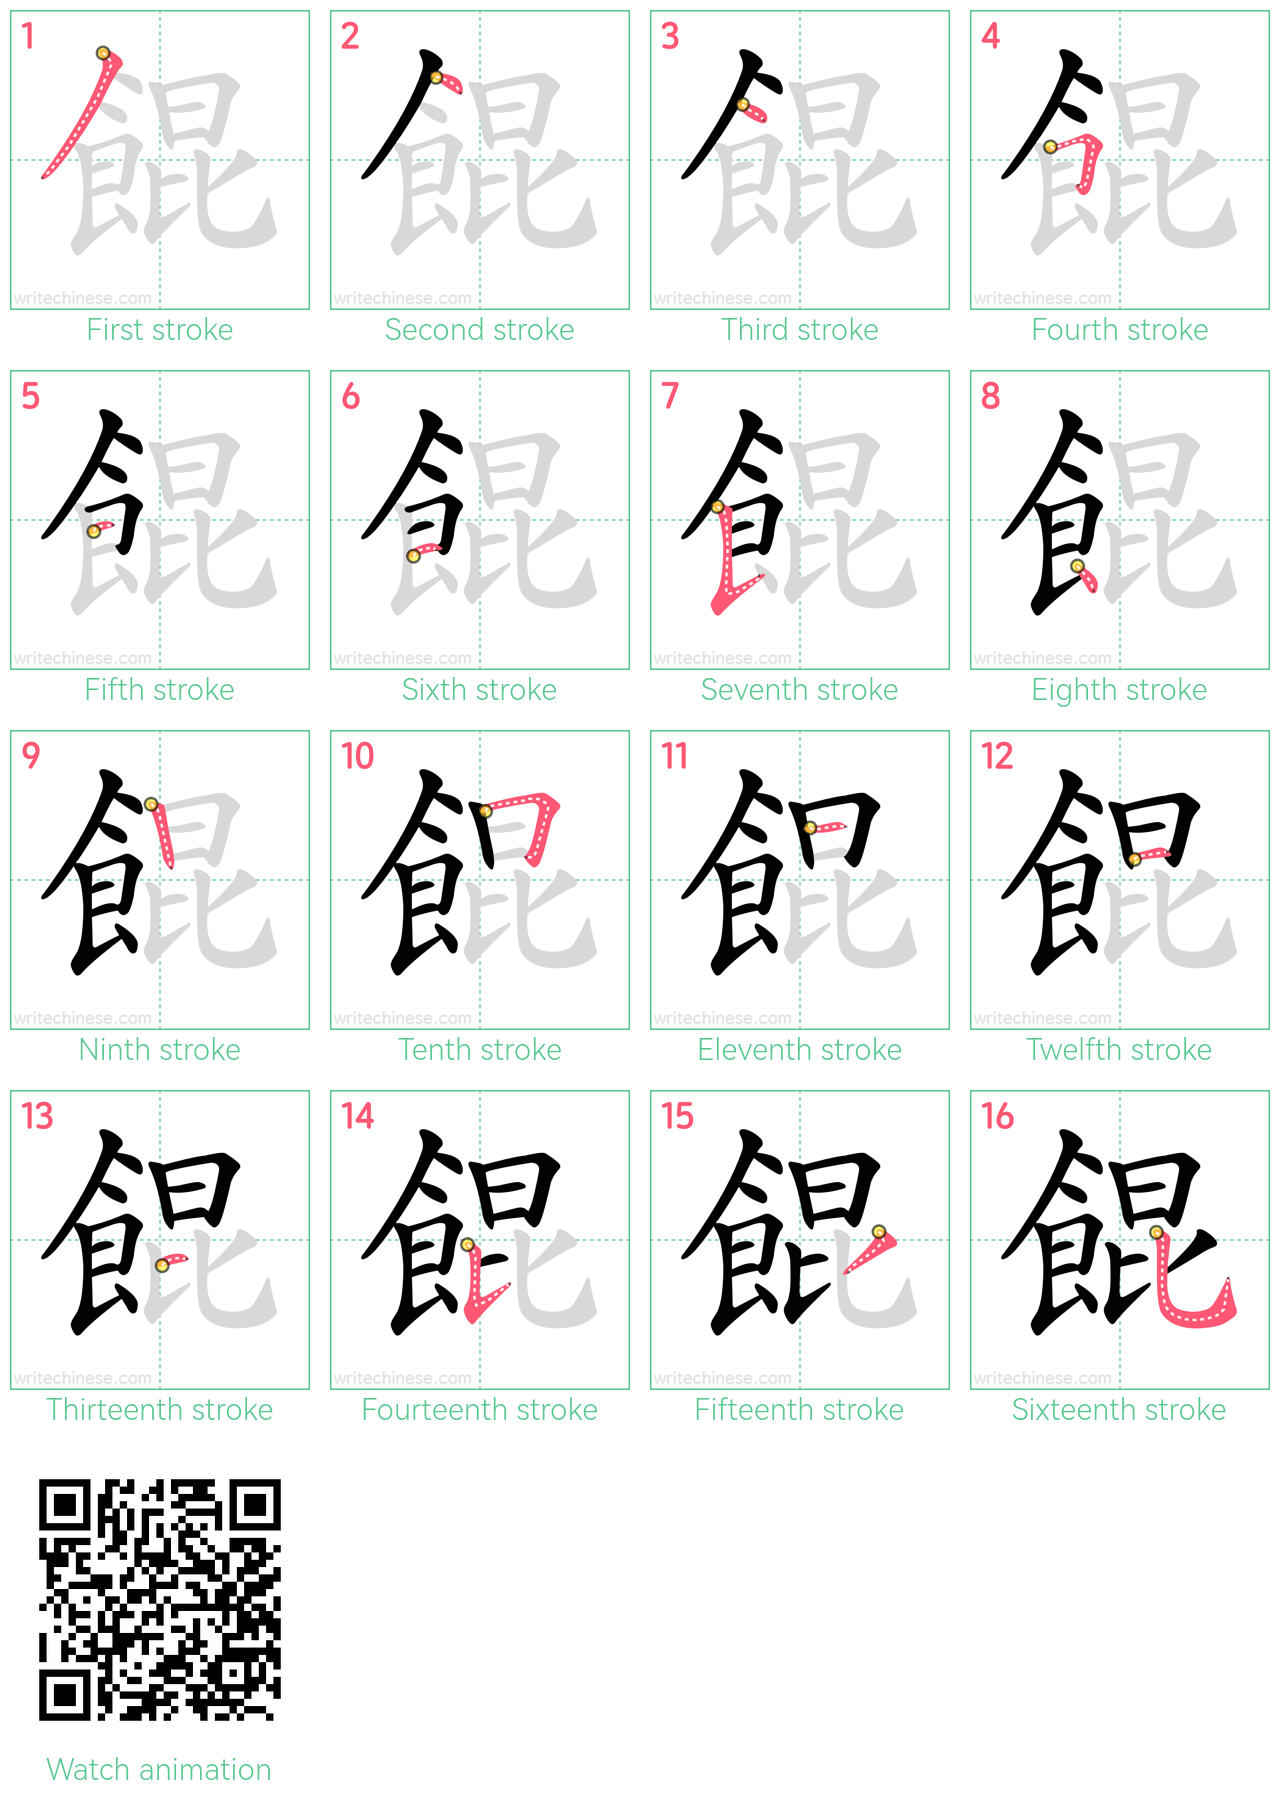 餛 step-by-step stroke order diagrams